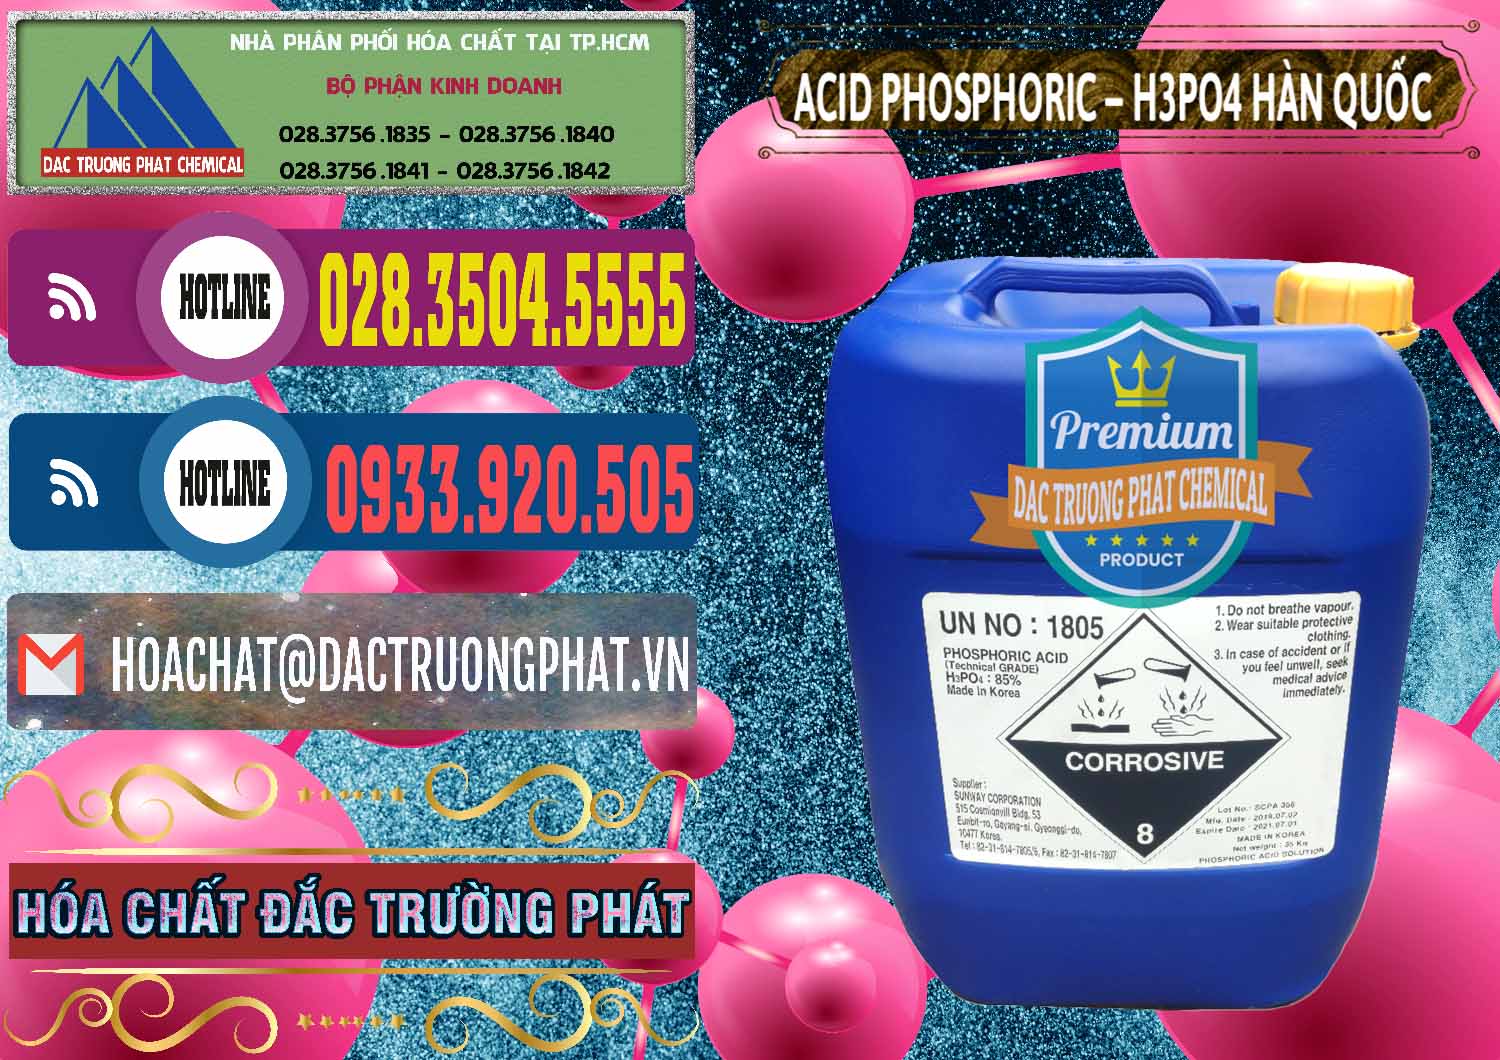 Đơn vị chuyên kinh doanh ( bán ) Acid Phosphoric – H3PO4 85% Can Xanh Hàn Quốc Korea - 0016 - Nơi chuyên bán và phân phối hóa chất tại TP.HCM - muabanhoachat.com.vn